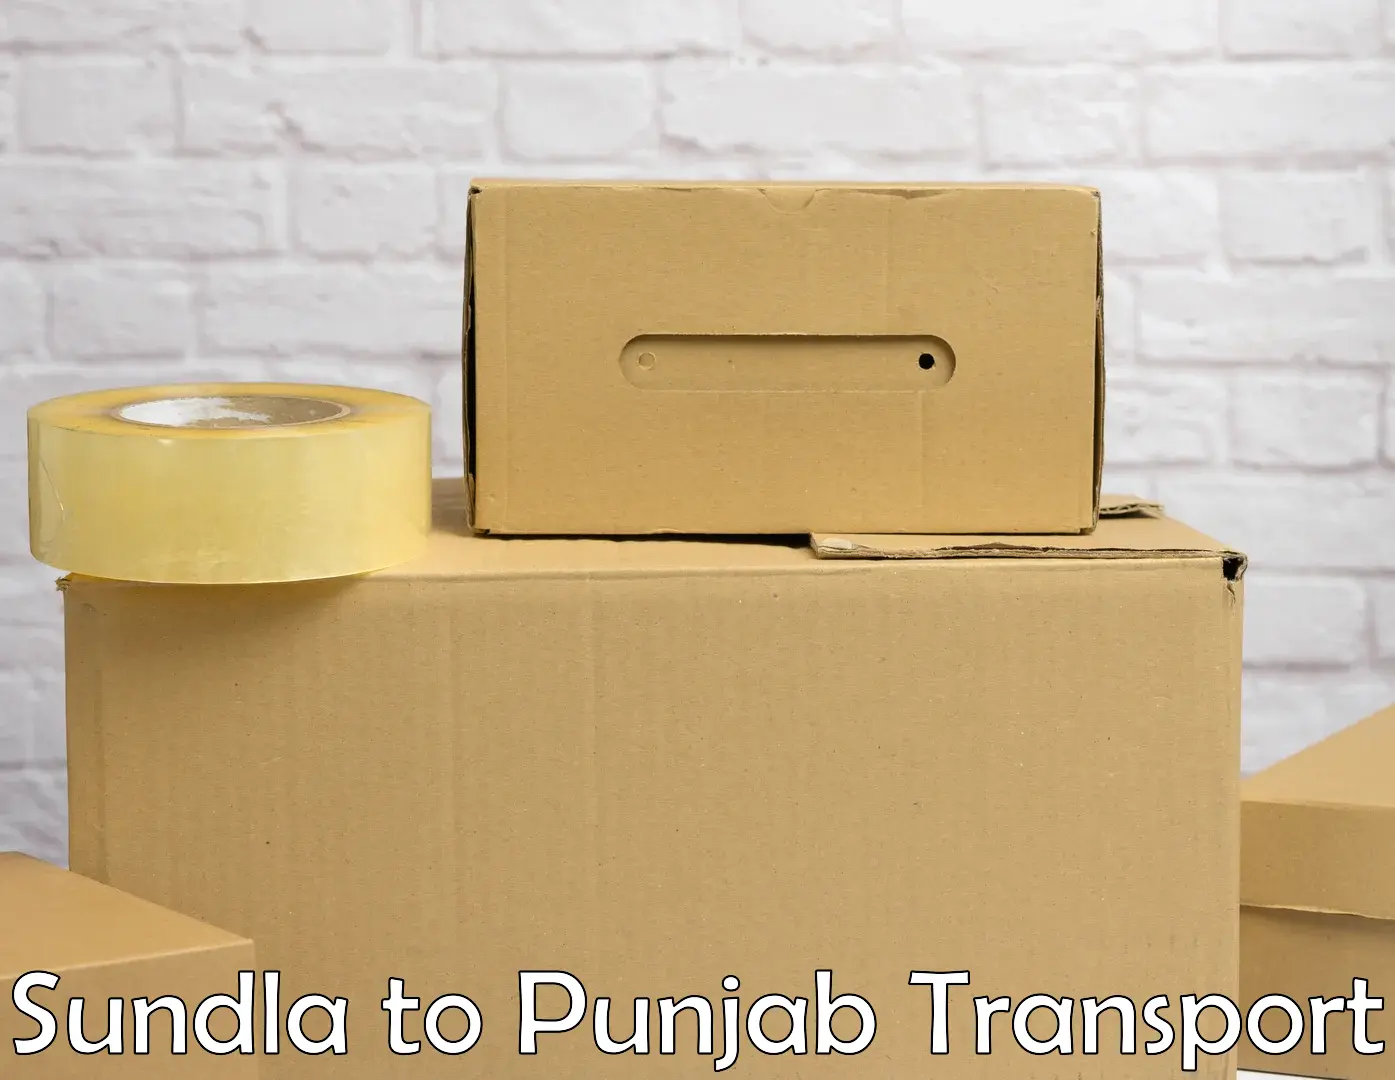 Transport services Sundla to Central University of Punjab Bathinda